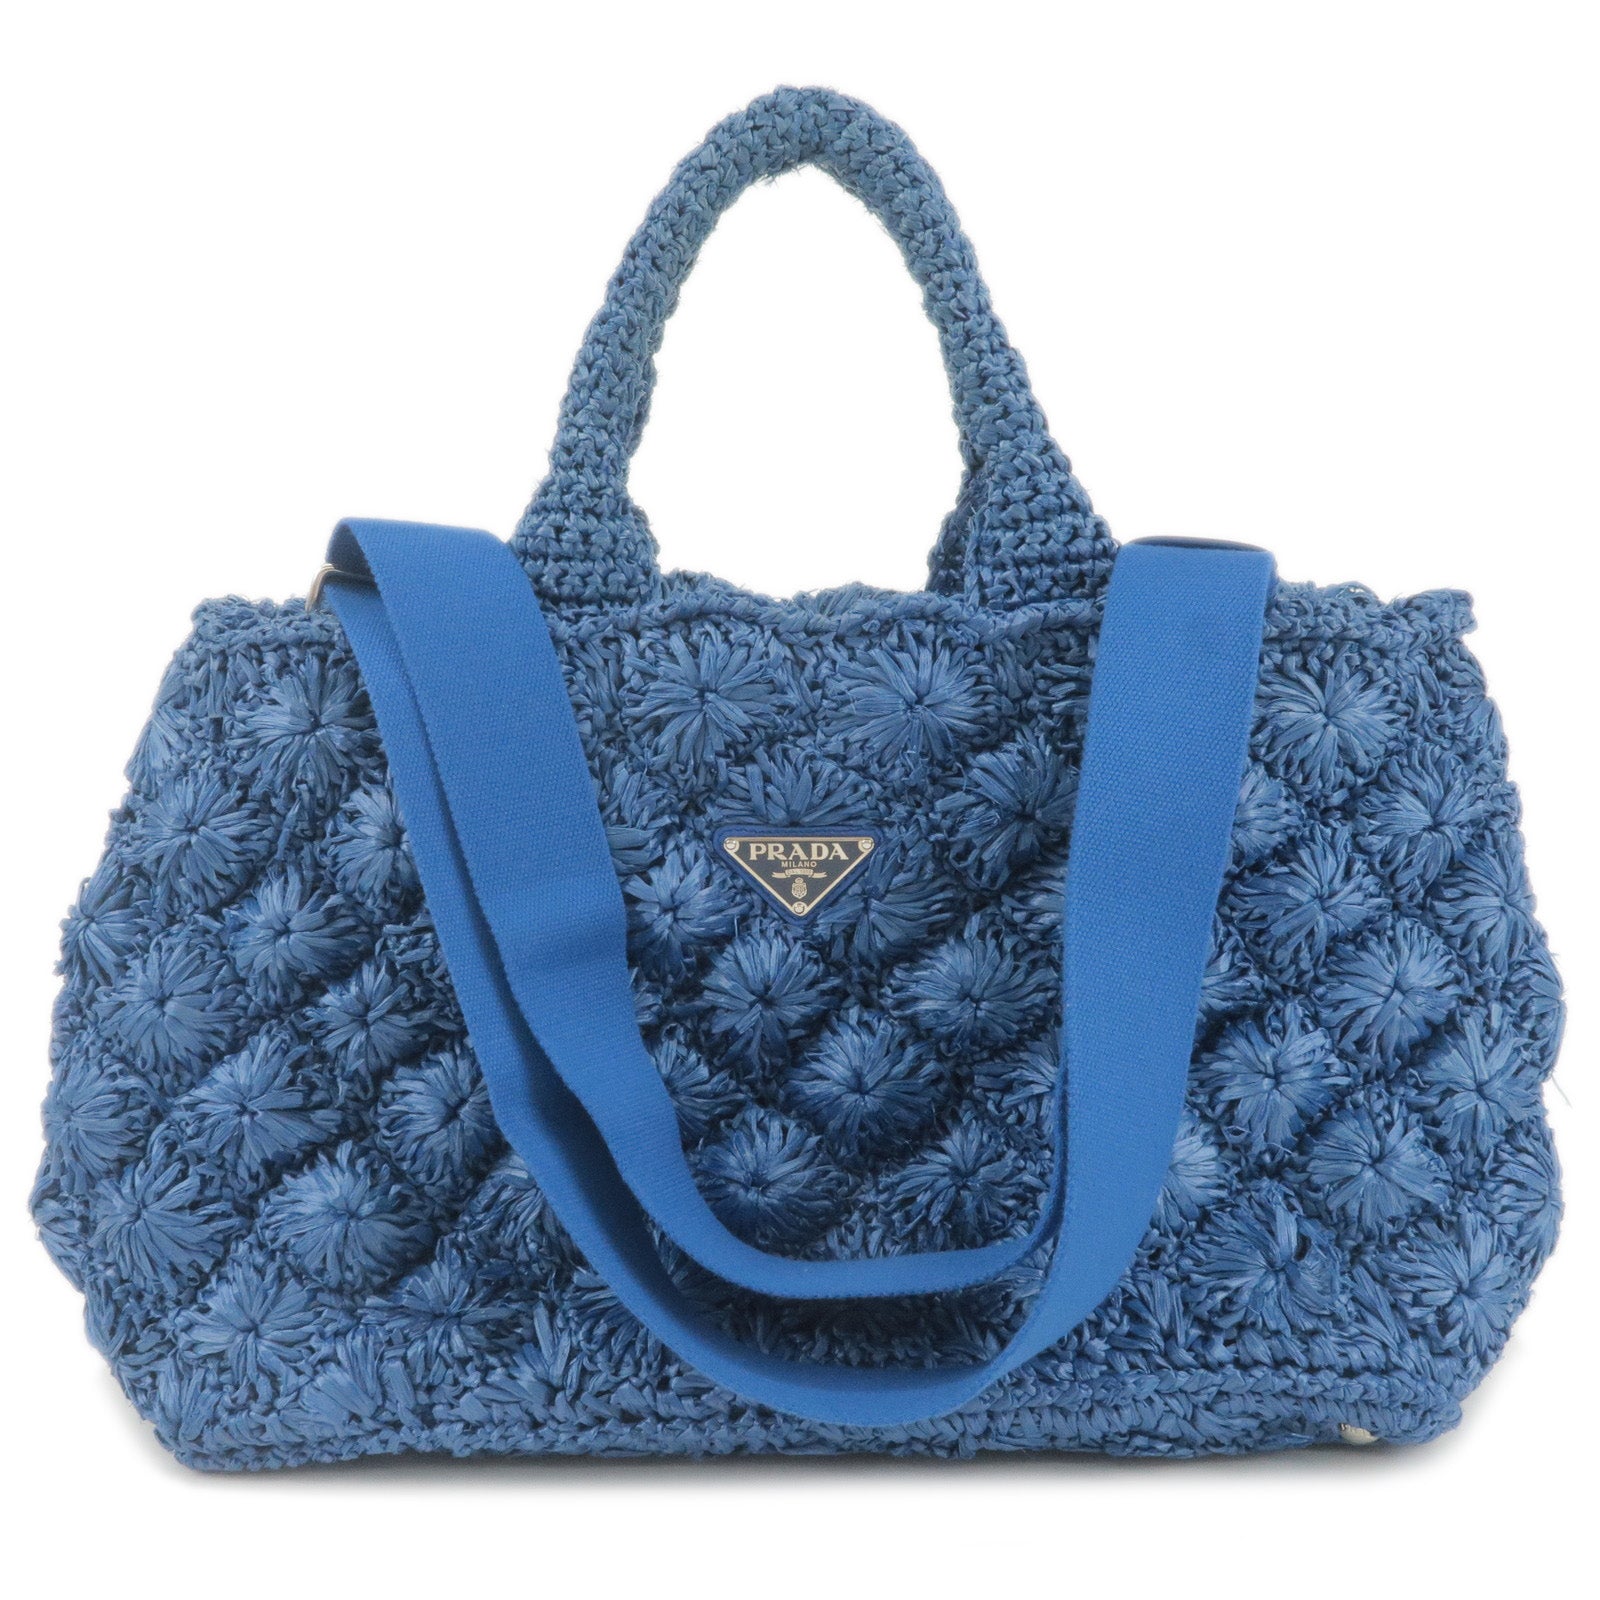 PRADA Tote Bag Raffia Crocket Blue Japan [Used]